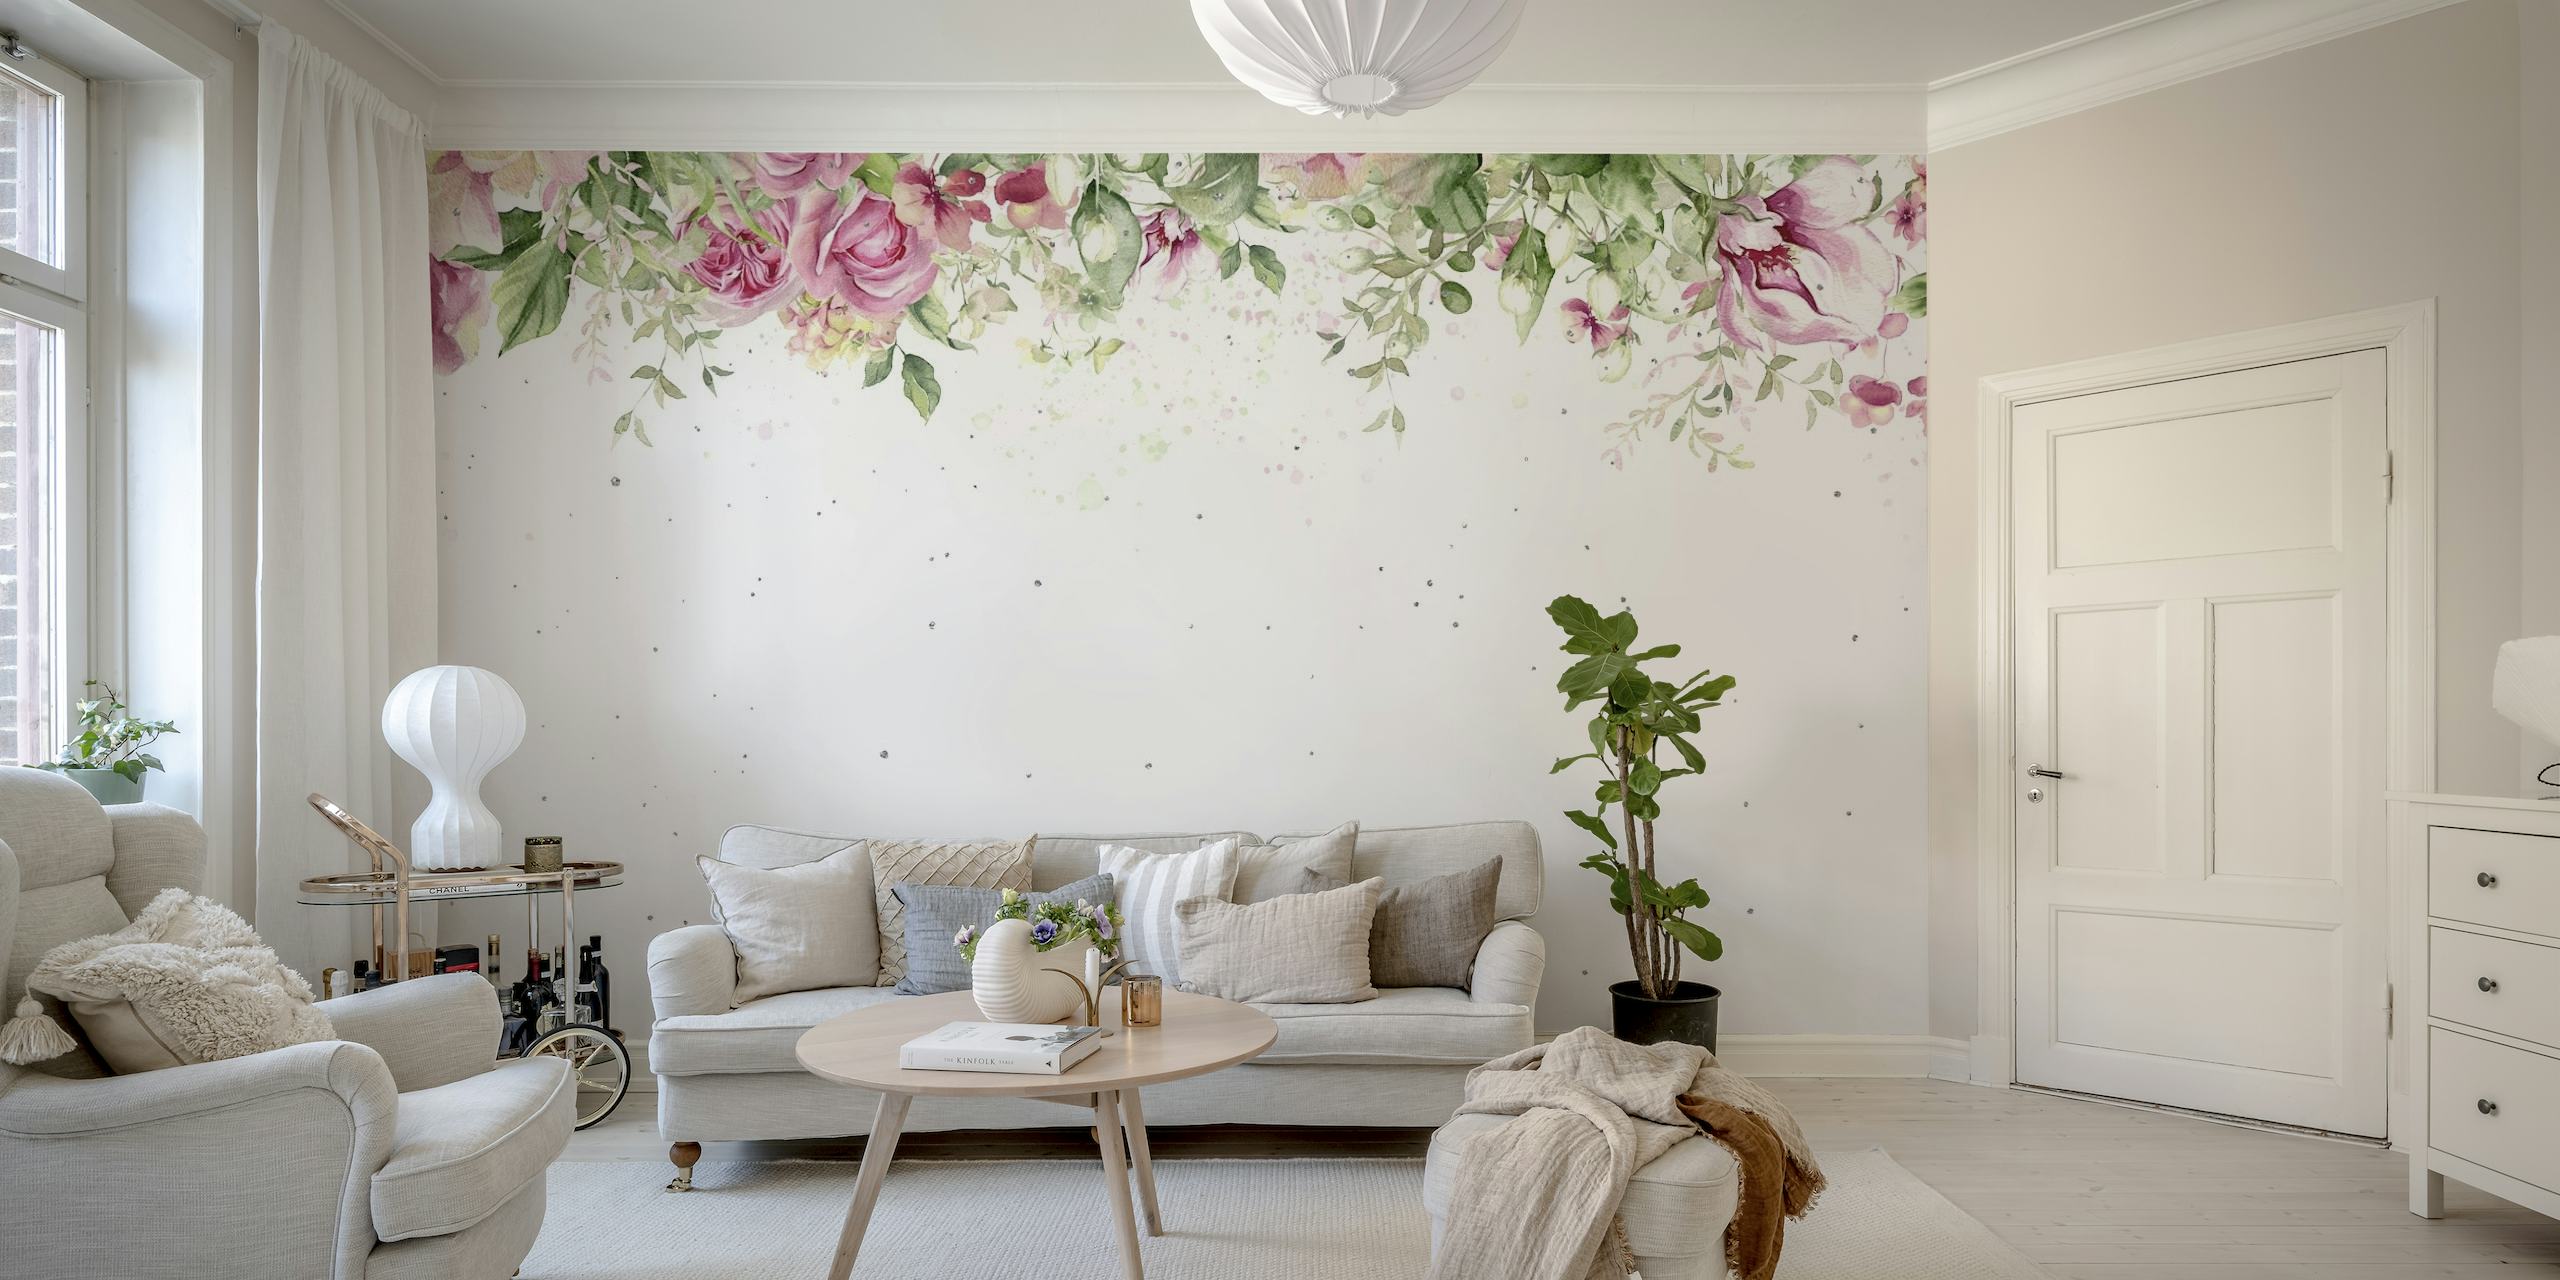 Elegantes rosas aquarela e vegetação criando uma borda superior tranquila em um mural de parede